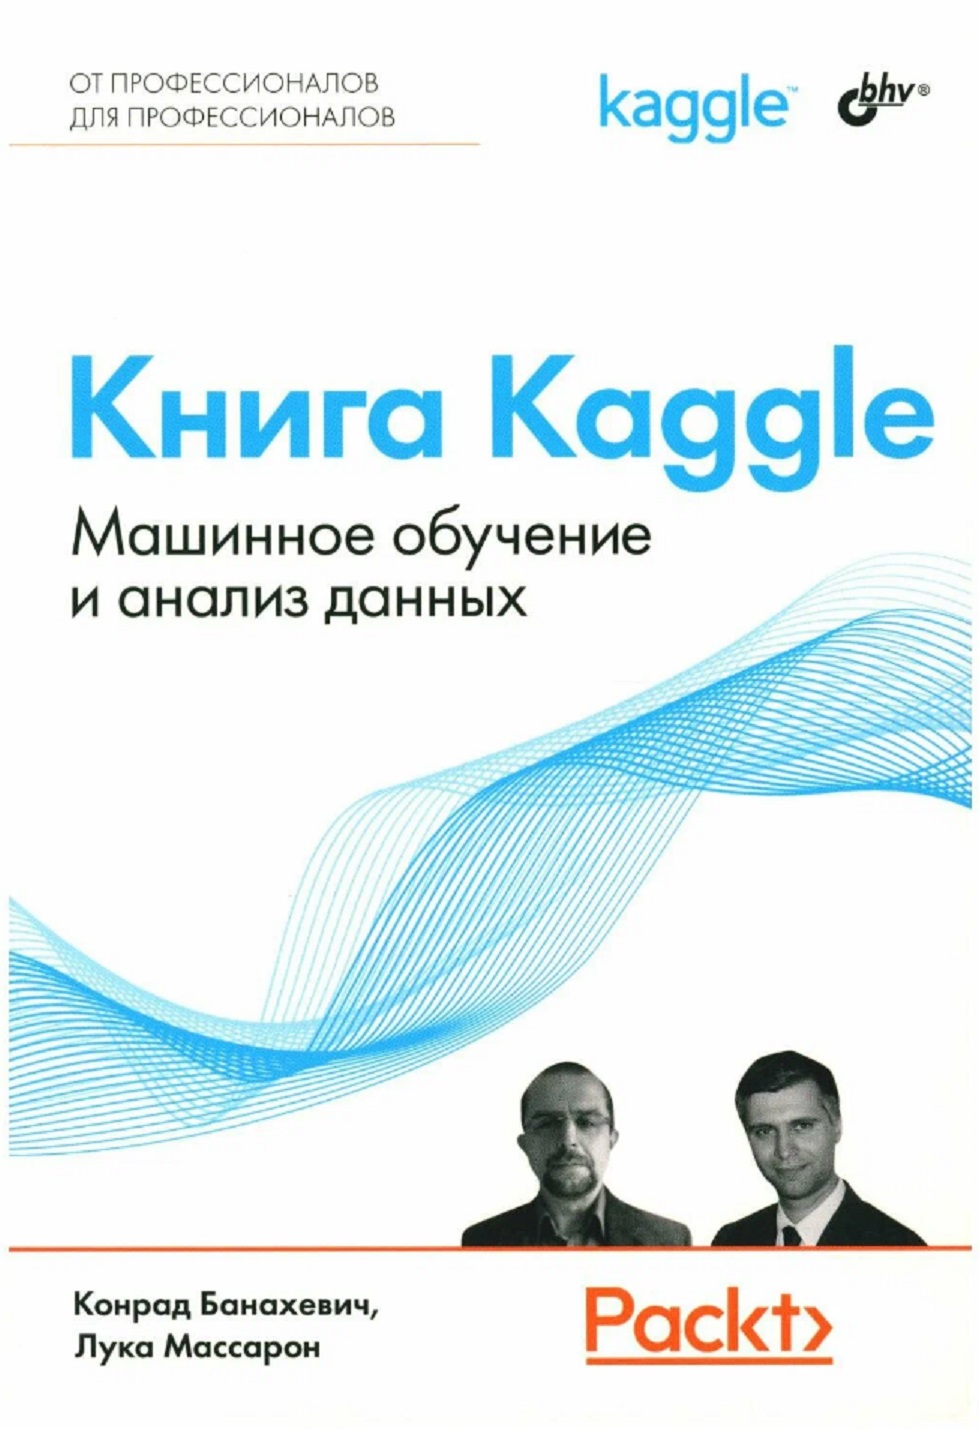 Книга Kaggle. Машинное обучение и анализ данных